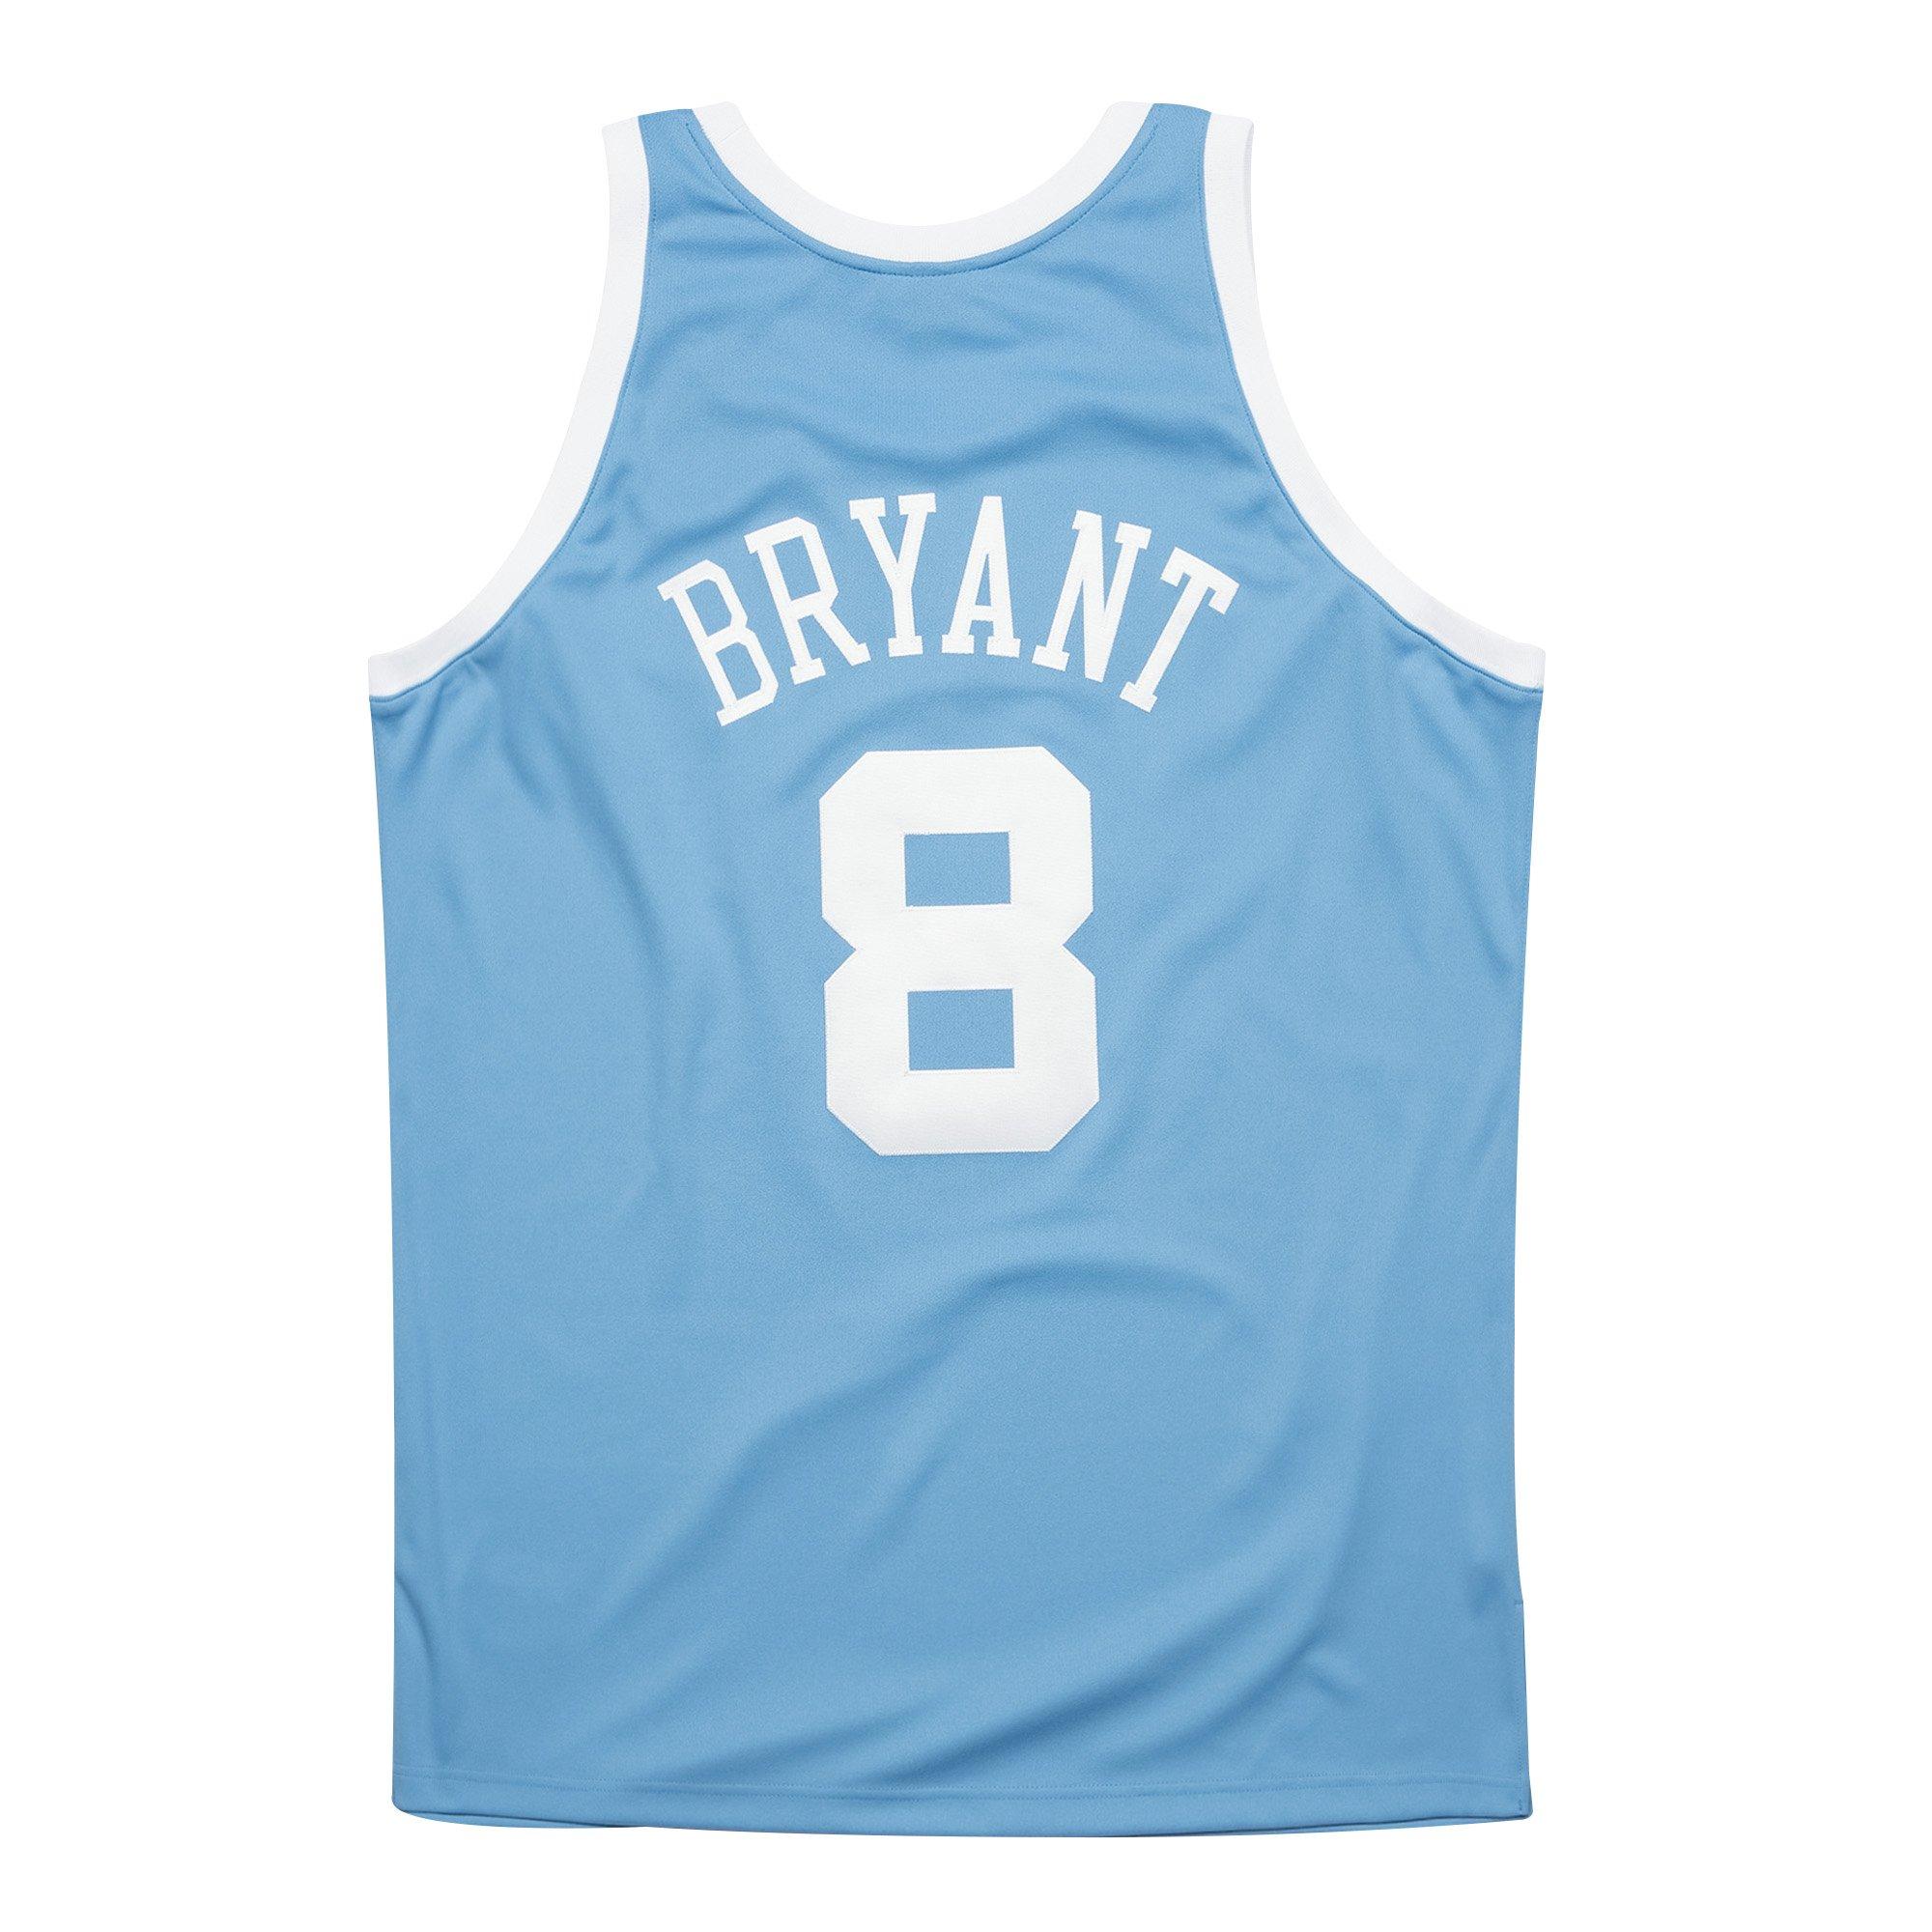 Headgear Classics Jersey Kobe Bryant Crenshaw Lakers Mens Blue #8 MEDIUM